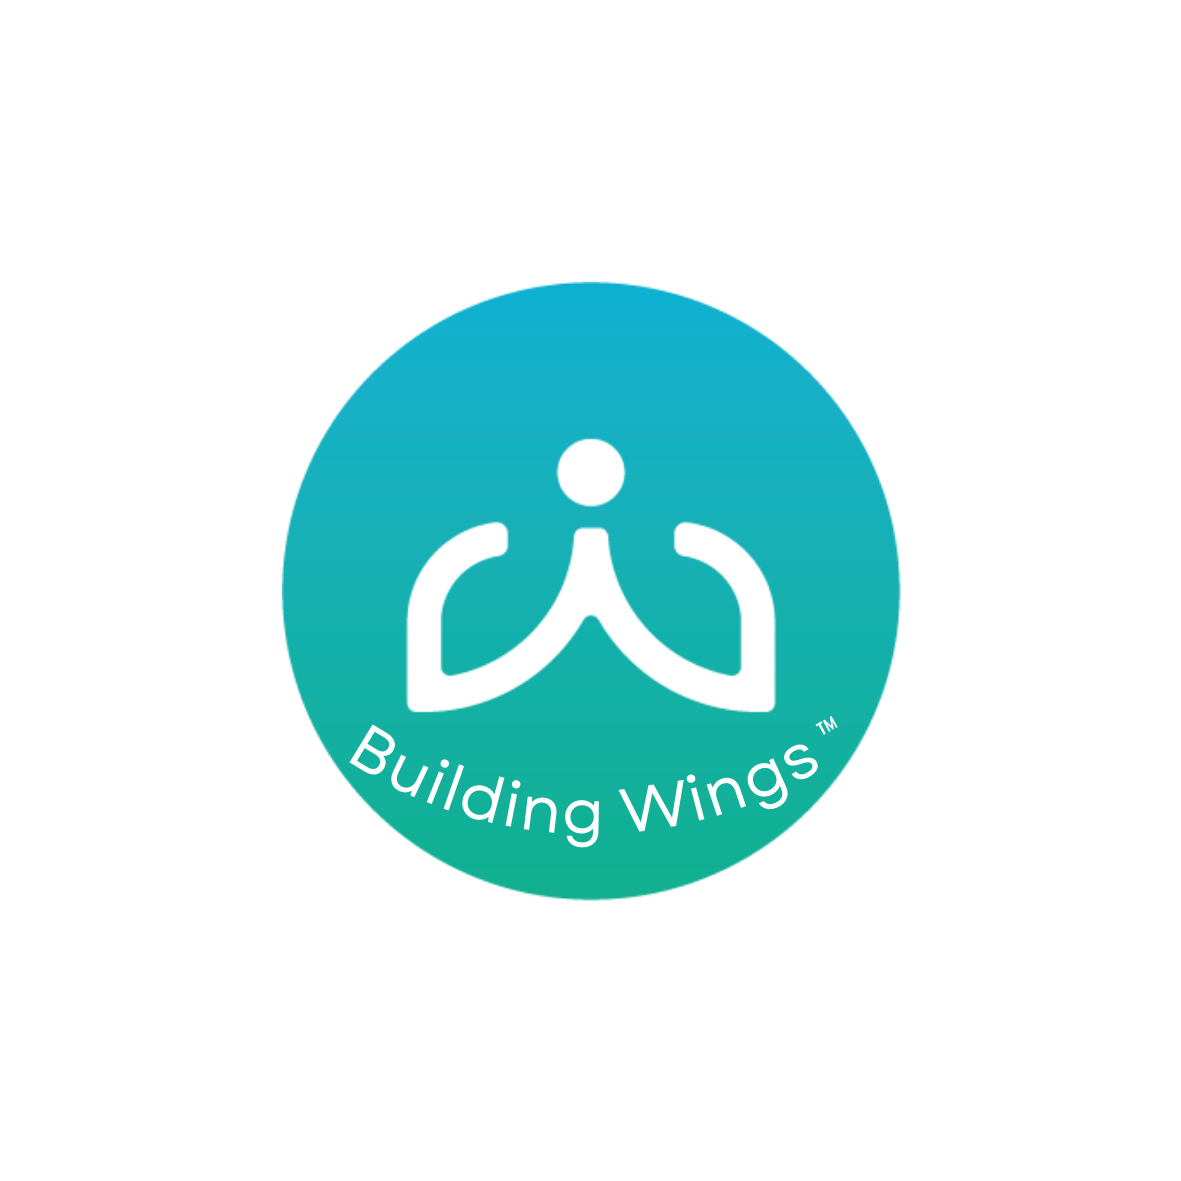 Building Wings